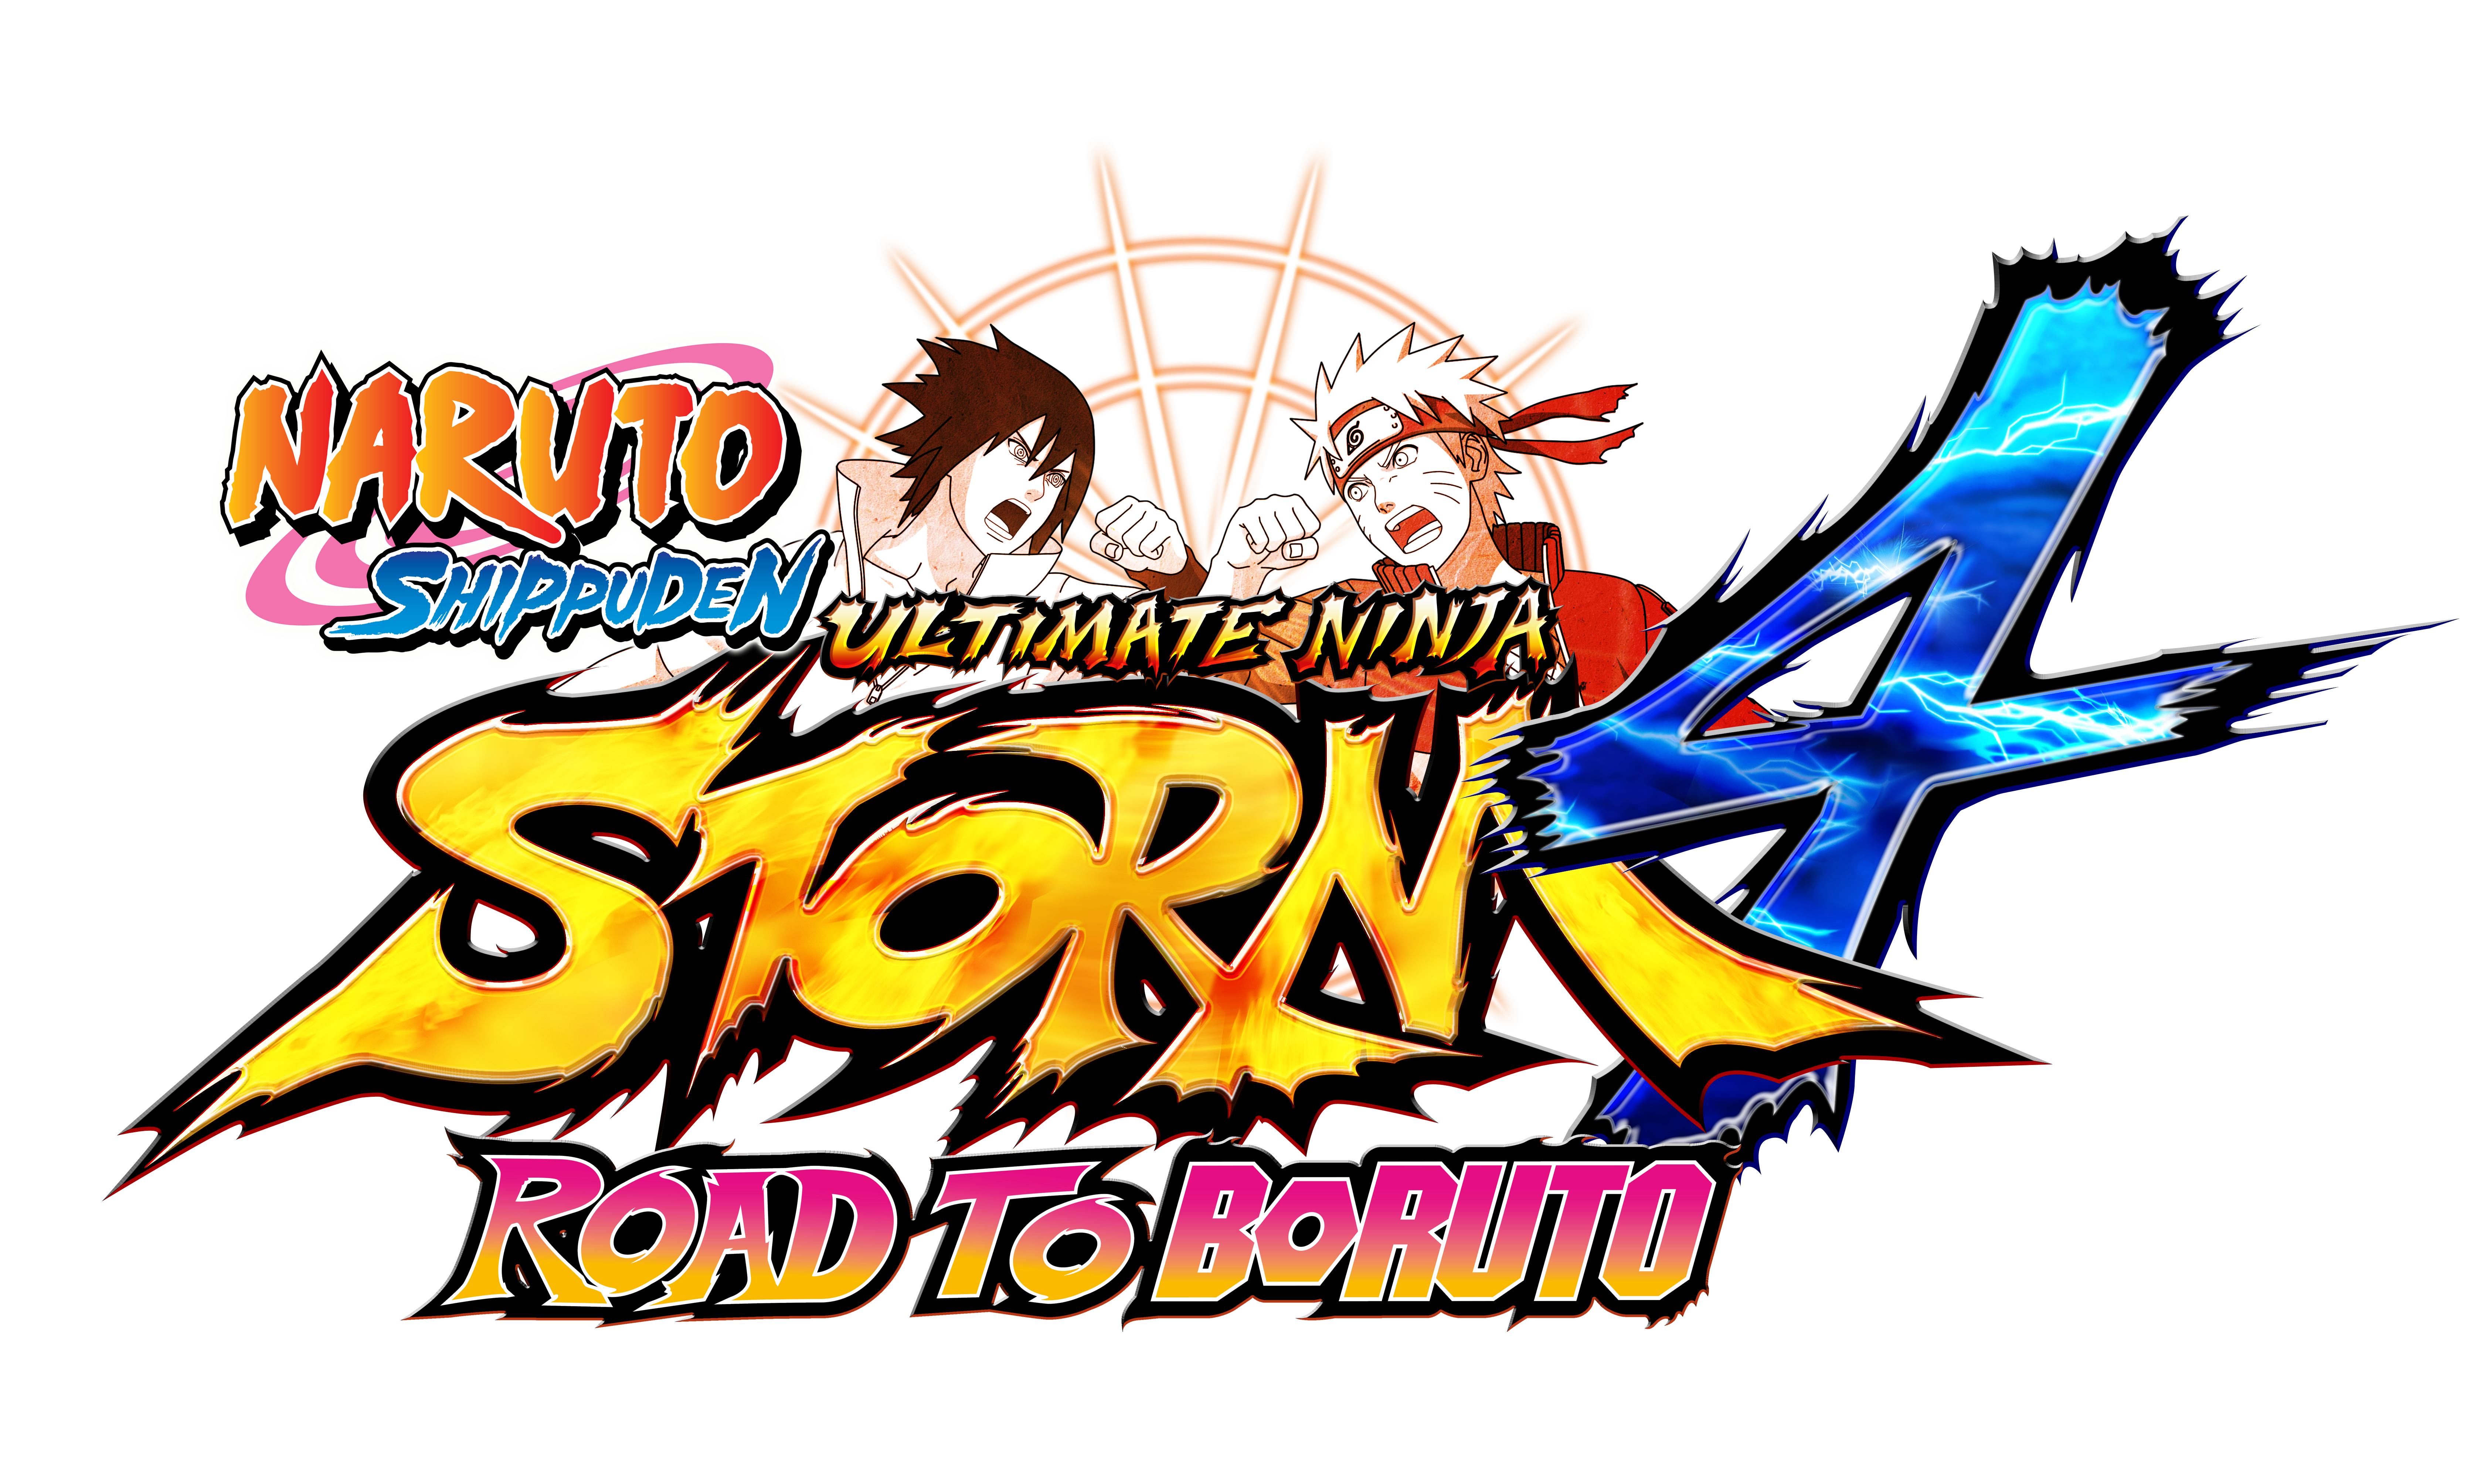 naruto ultimate ninja storm 4 road to boruto torrent